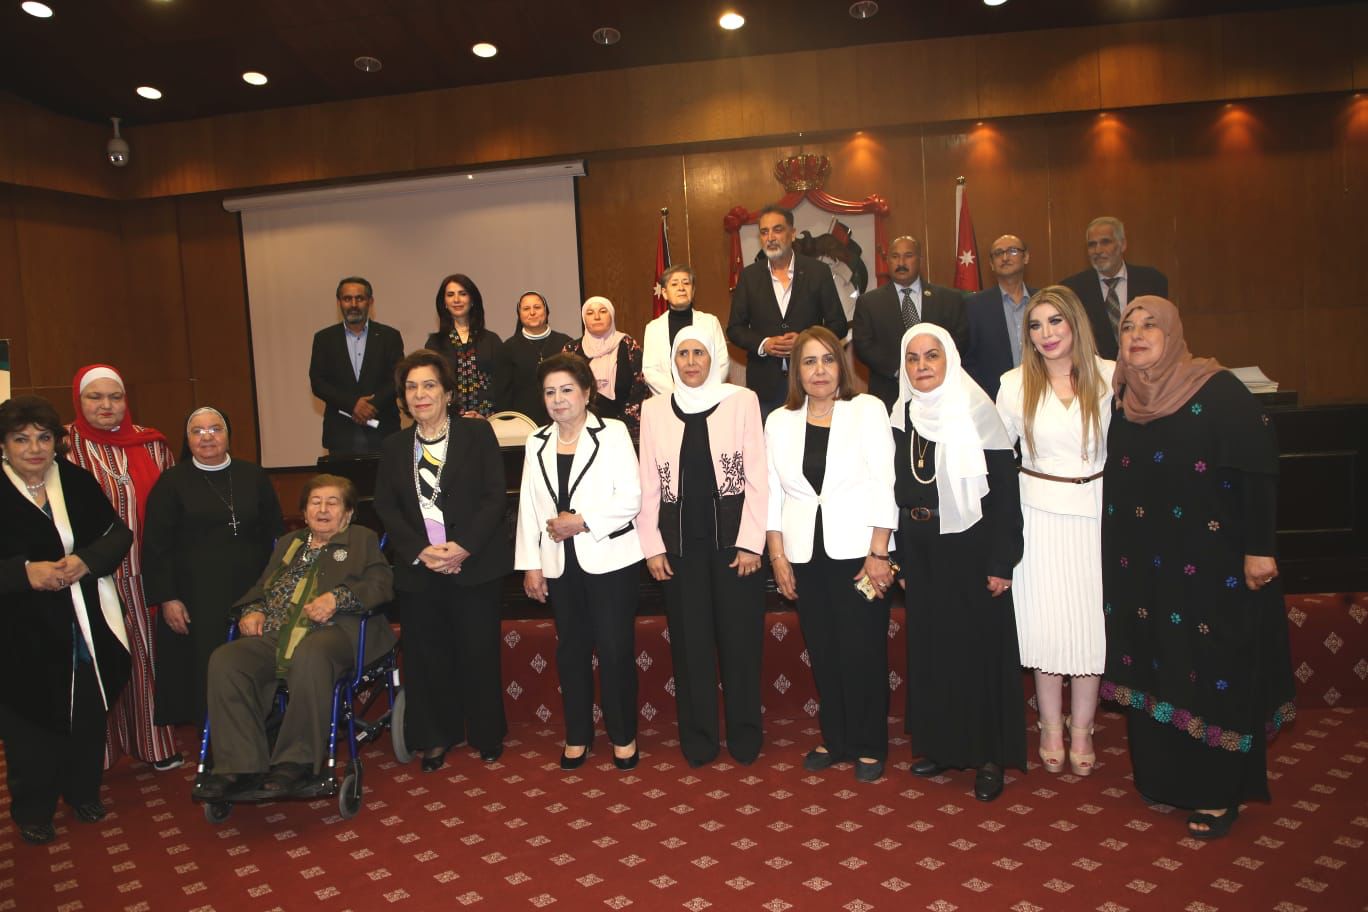 الأميرة وجدان بنت فواز الهاشمي تُكرّم الشيخة منيرفا السهيل و نخبة من السيدات الأردنيات الرائدات في مجالاتهم